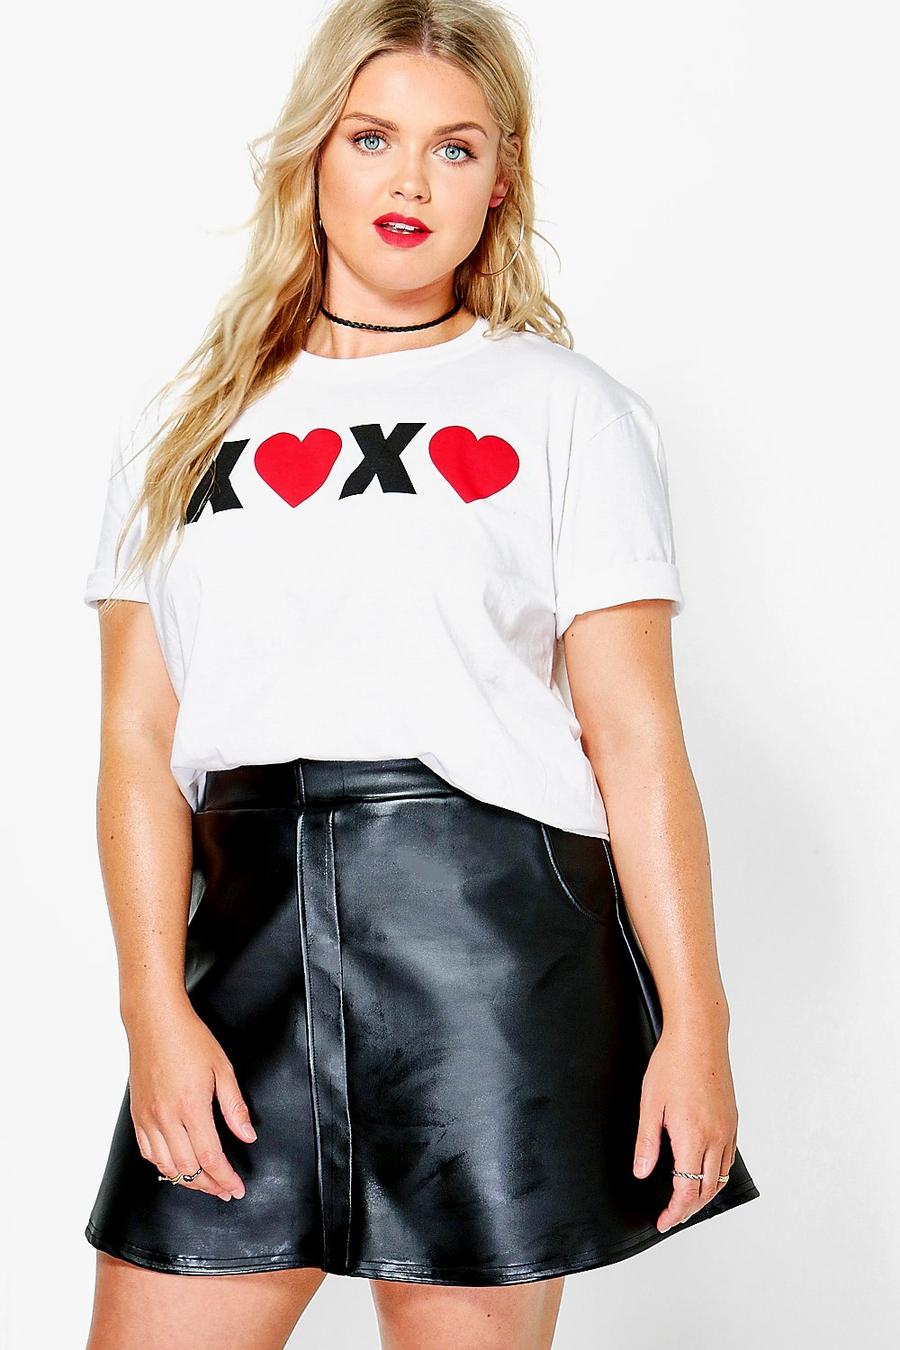 Camiseta con eslogan “XOXO” Plus image number 1